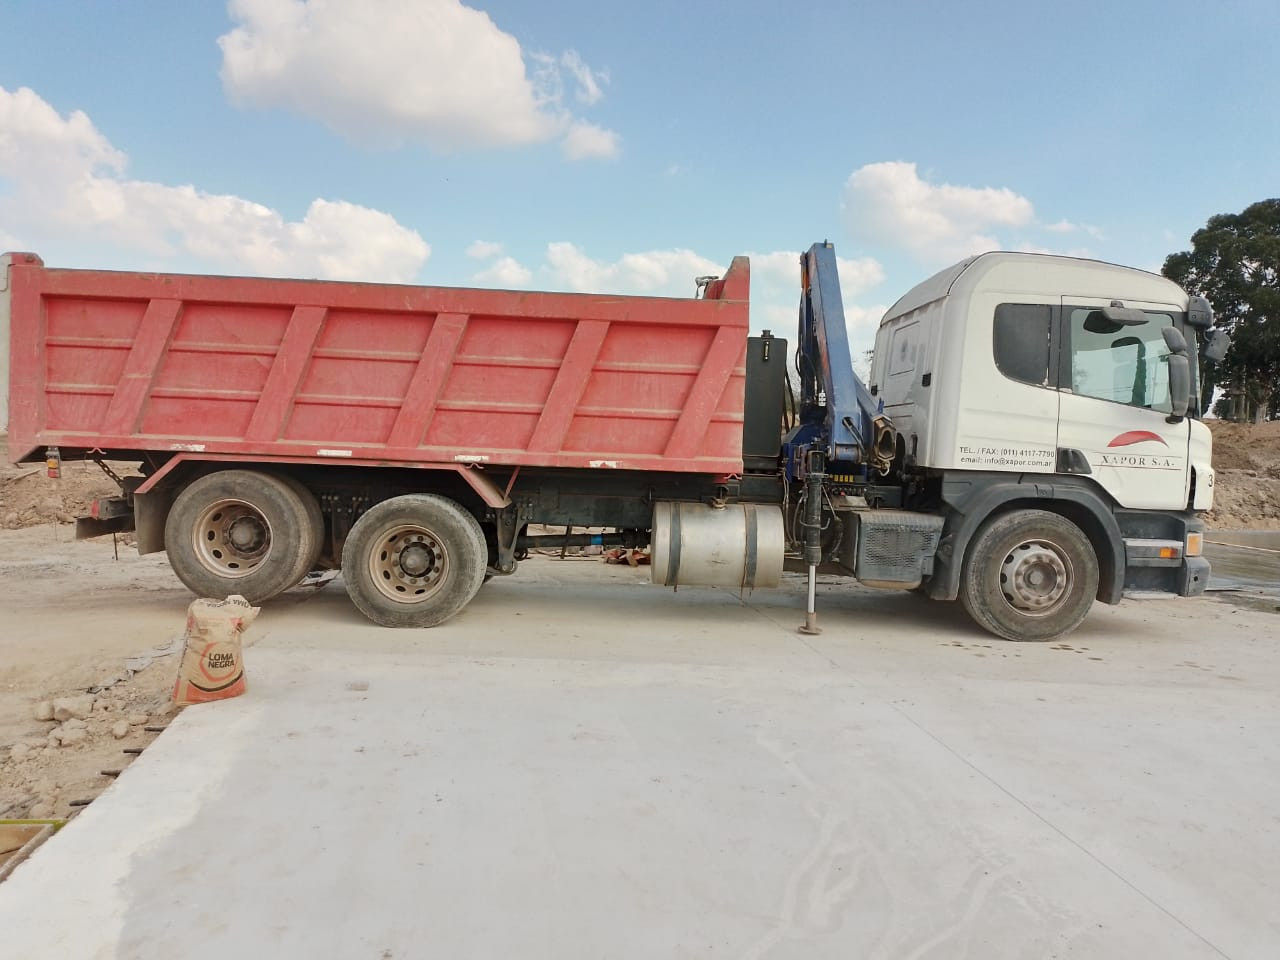 Camión desaparecido en el límite entre Quilmes y Florencio Varela marca Scania y perteneciente a una empresa constructora